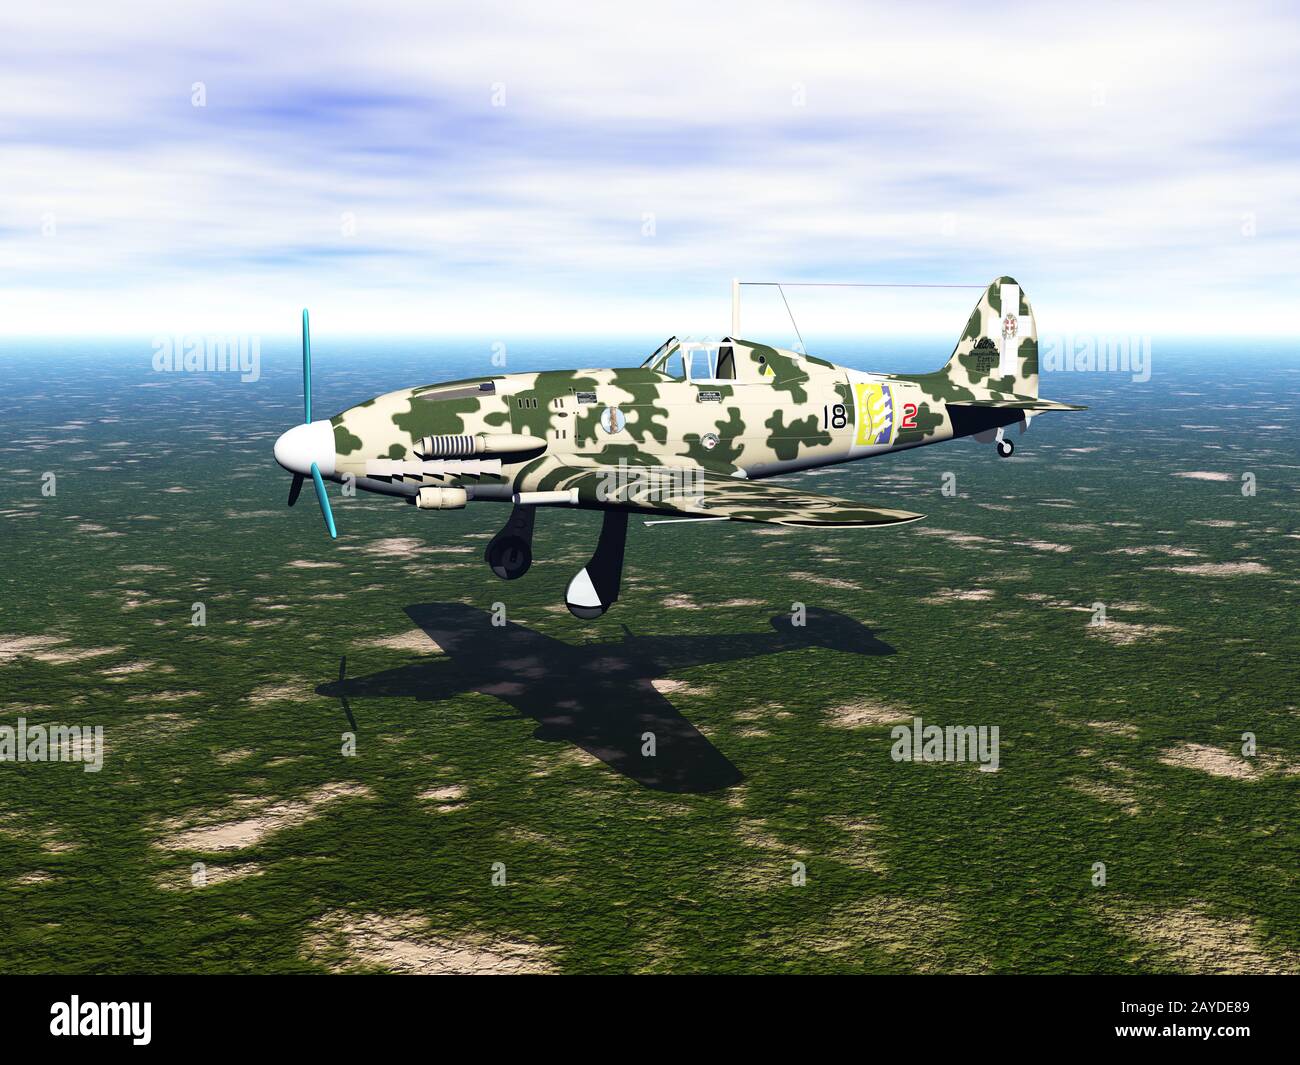 Avion dans le ciel avec peinture camouflage Banque D'Images